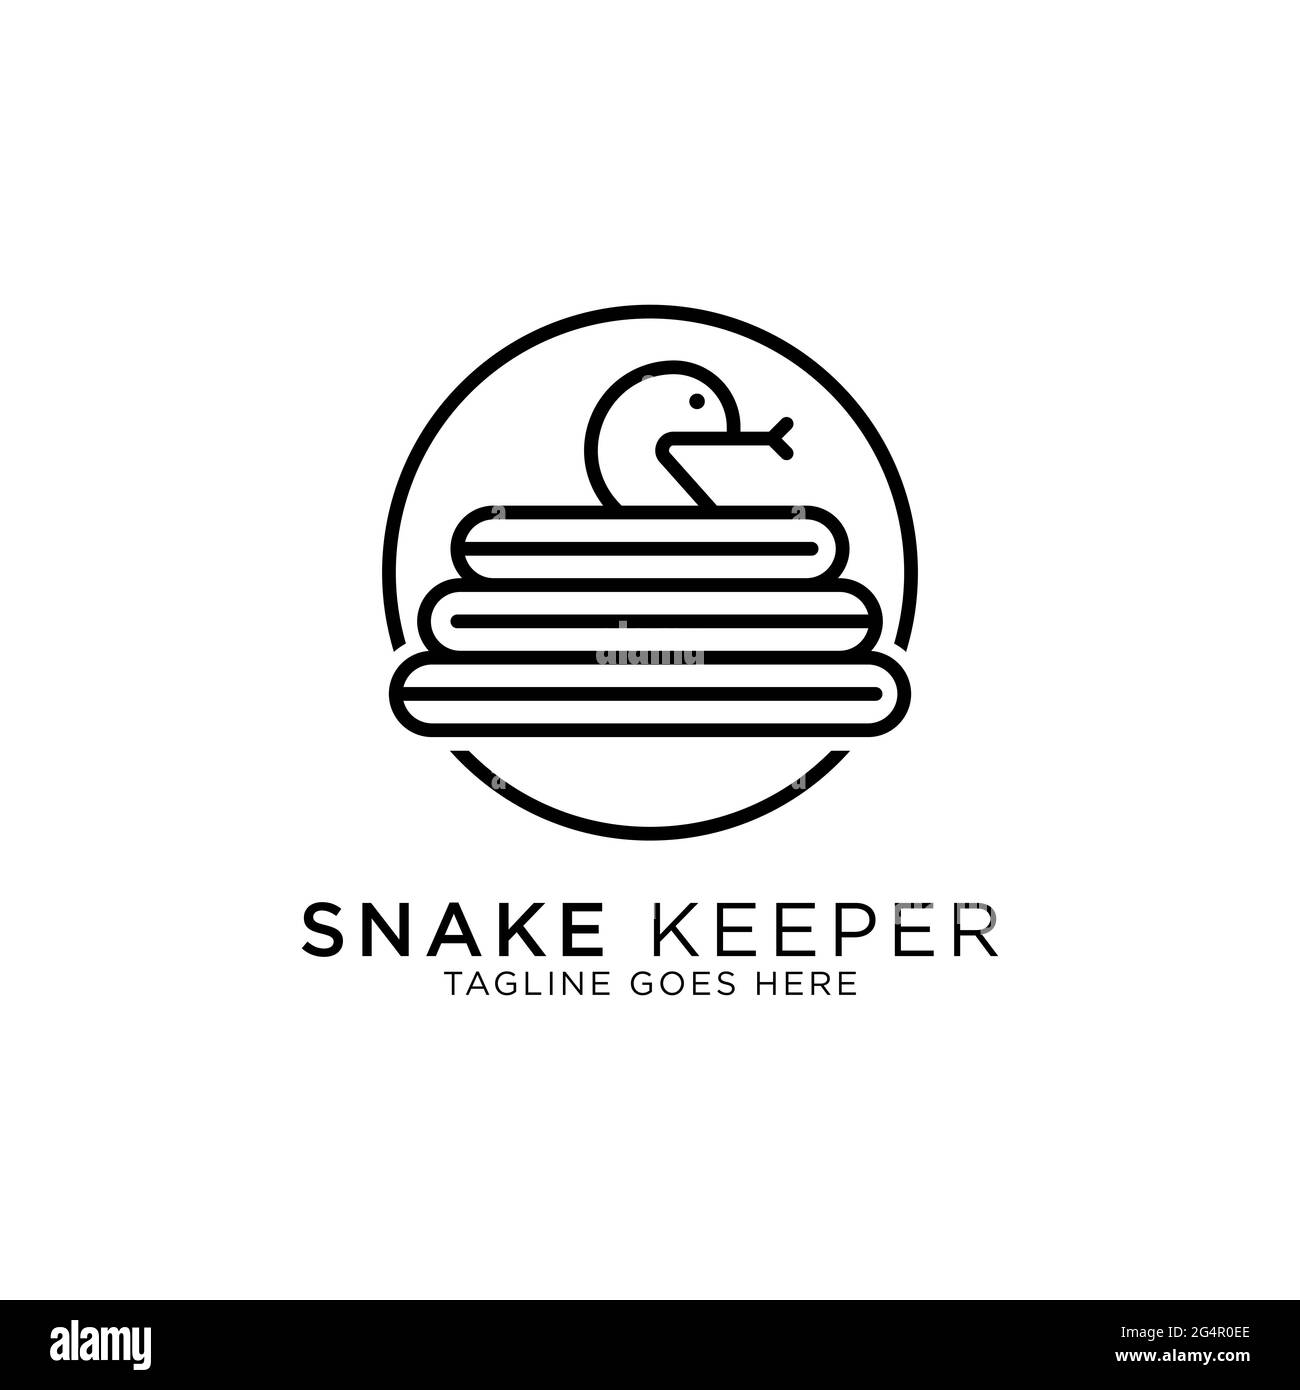 snake keeper line art logo design vector, idéal pour les inspirations de logo animal de compagnie ou animal Illustration de Vecteur